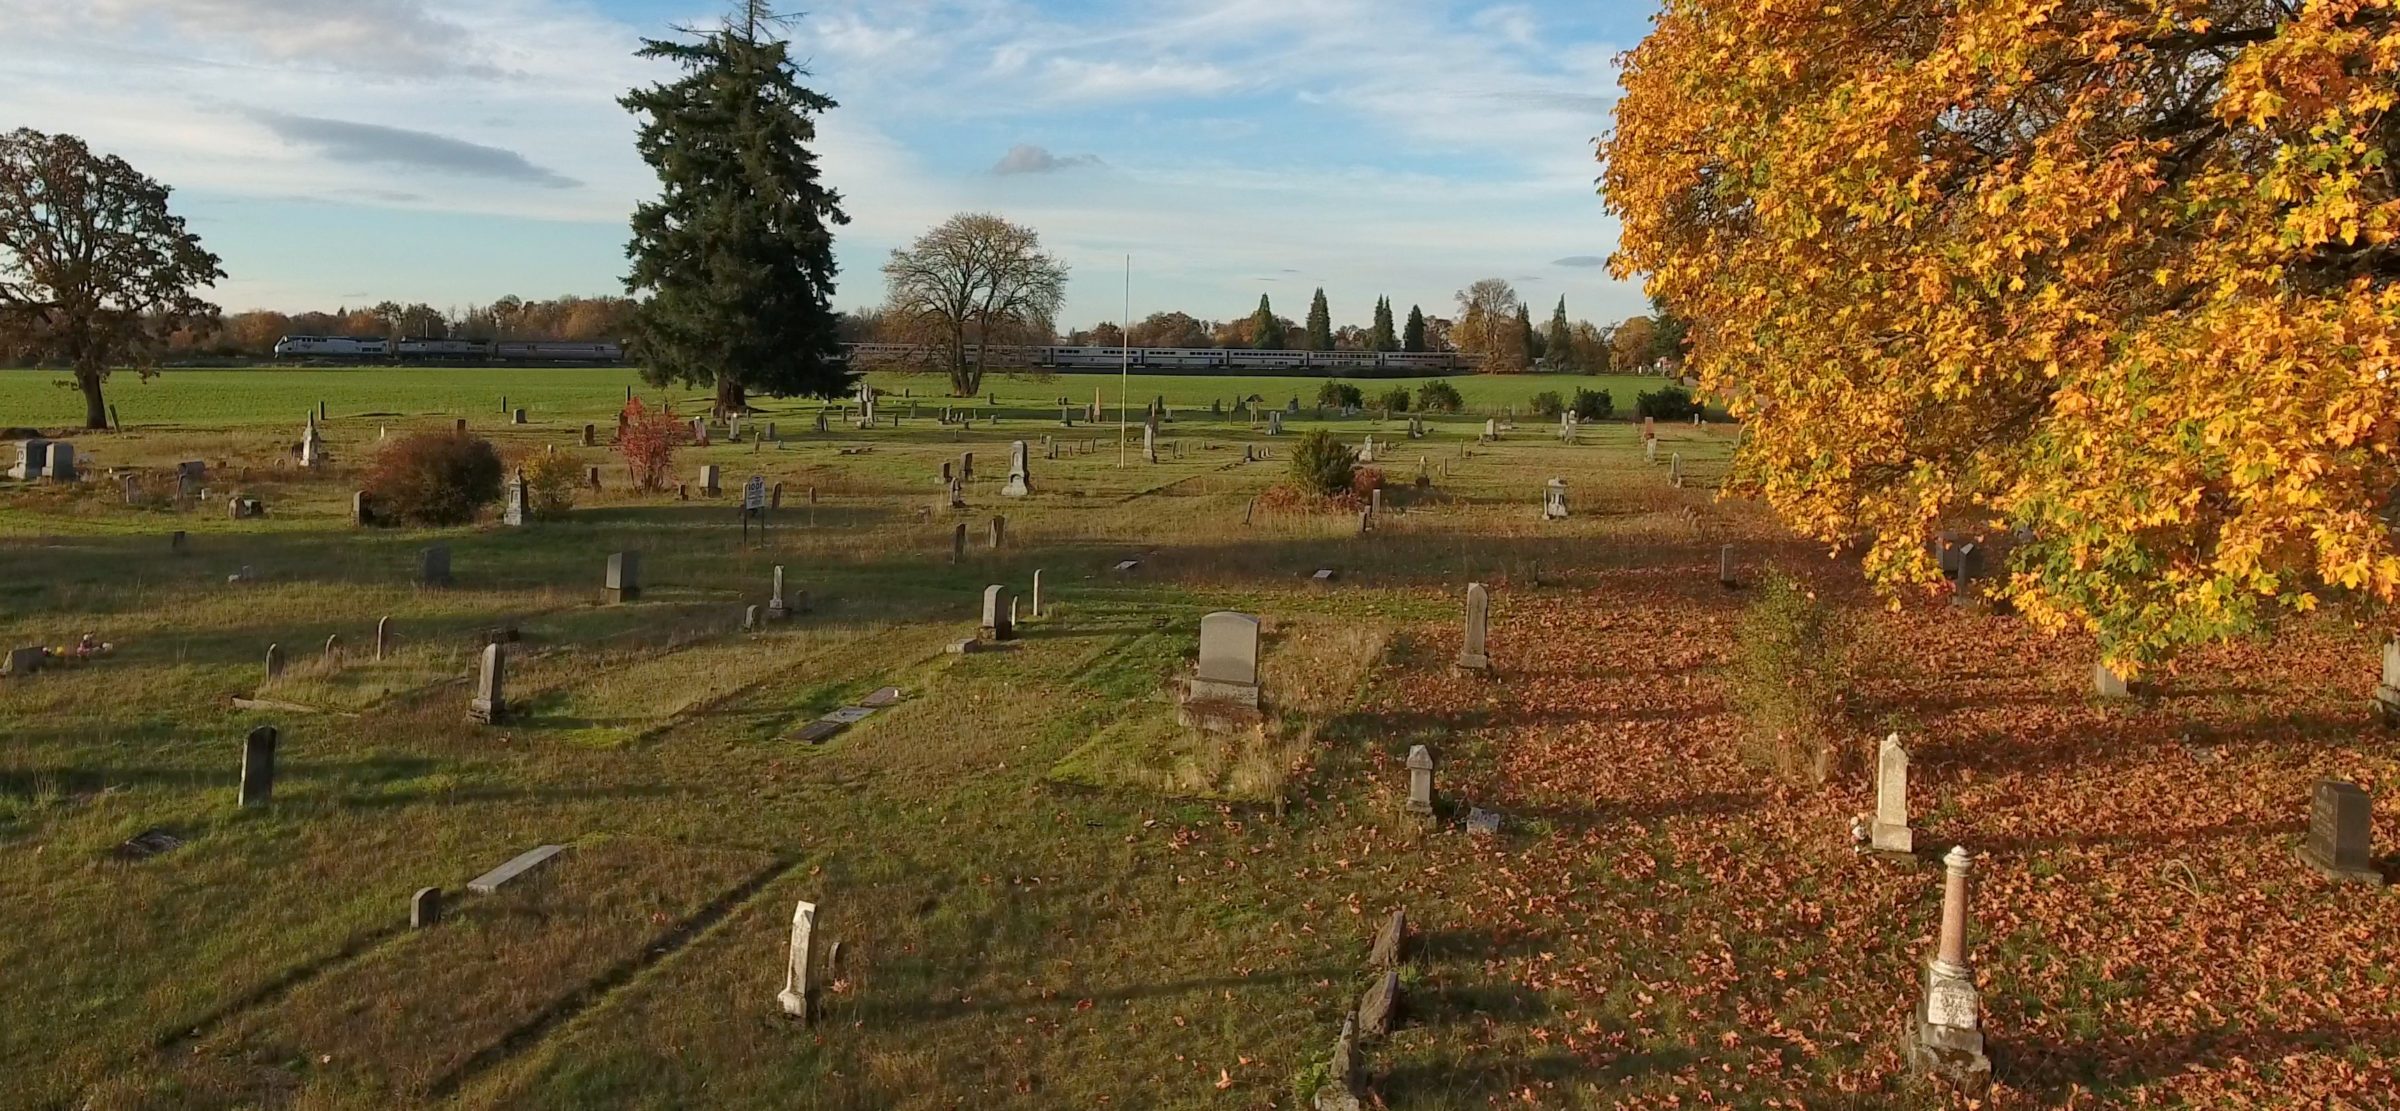 Photo of headstones in cemetery.